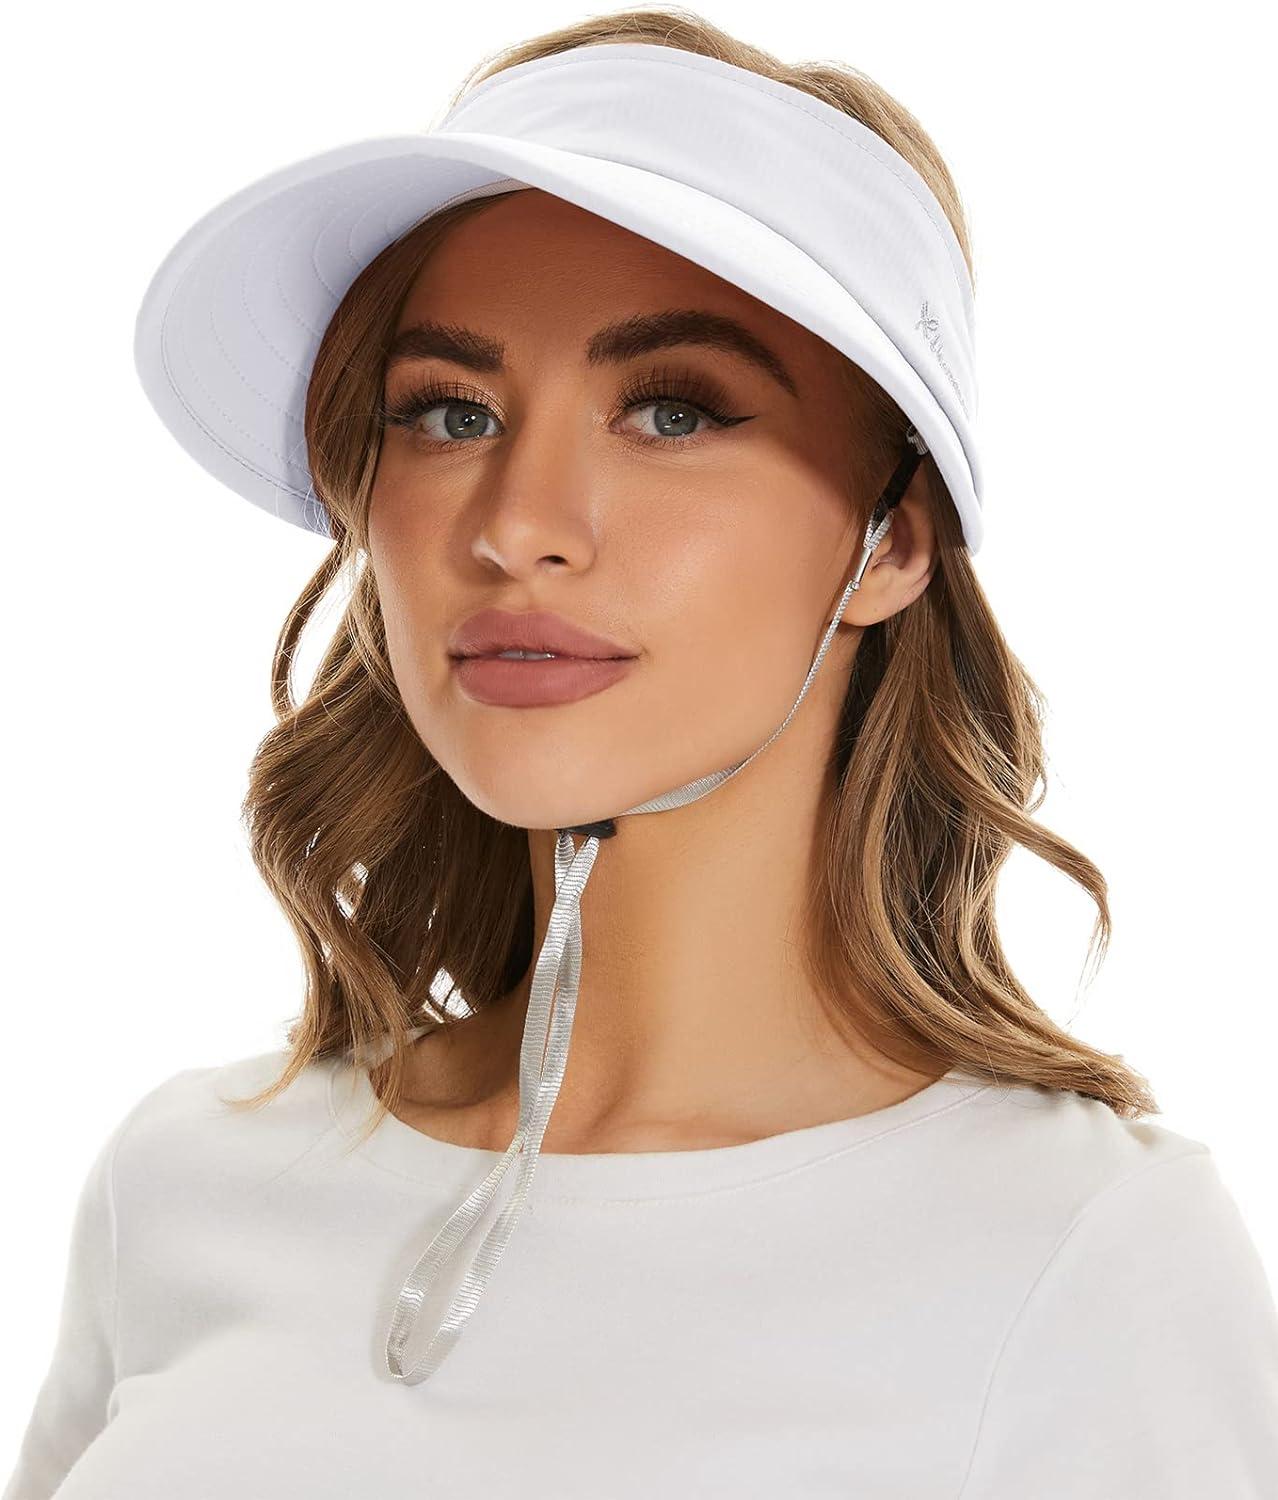 Sun Hats For Women, Wide Brim Sunscreen Hat Cap Beach Sunhat - Upf 50+  Women's Lightweight Foldable/packable Beach Sun Hat